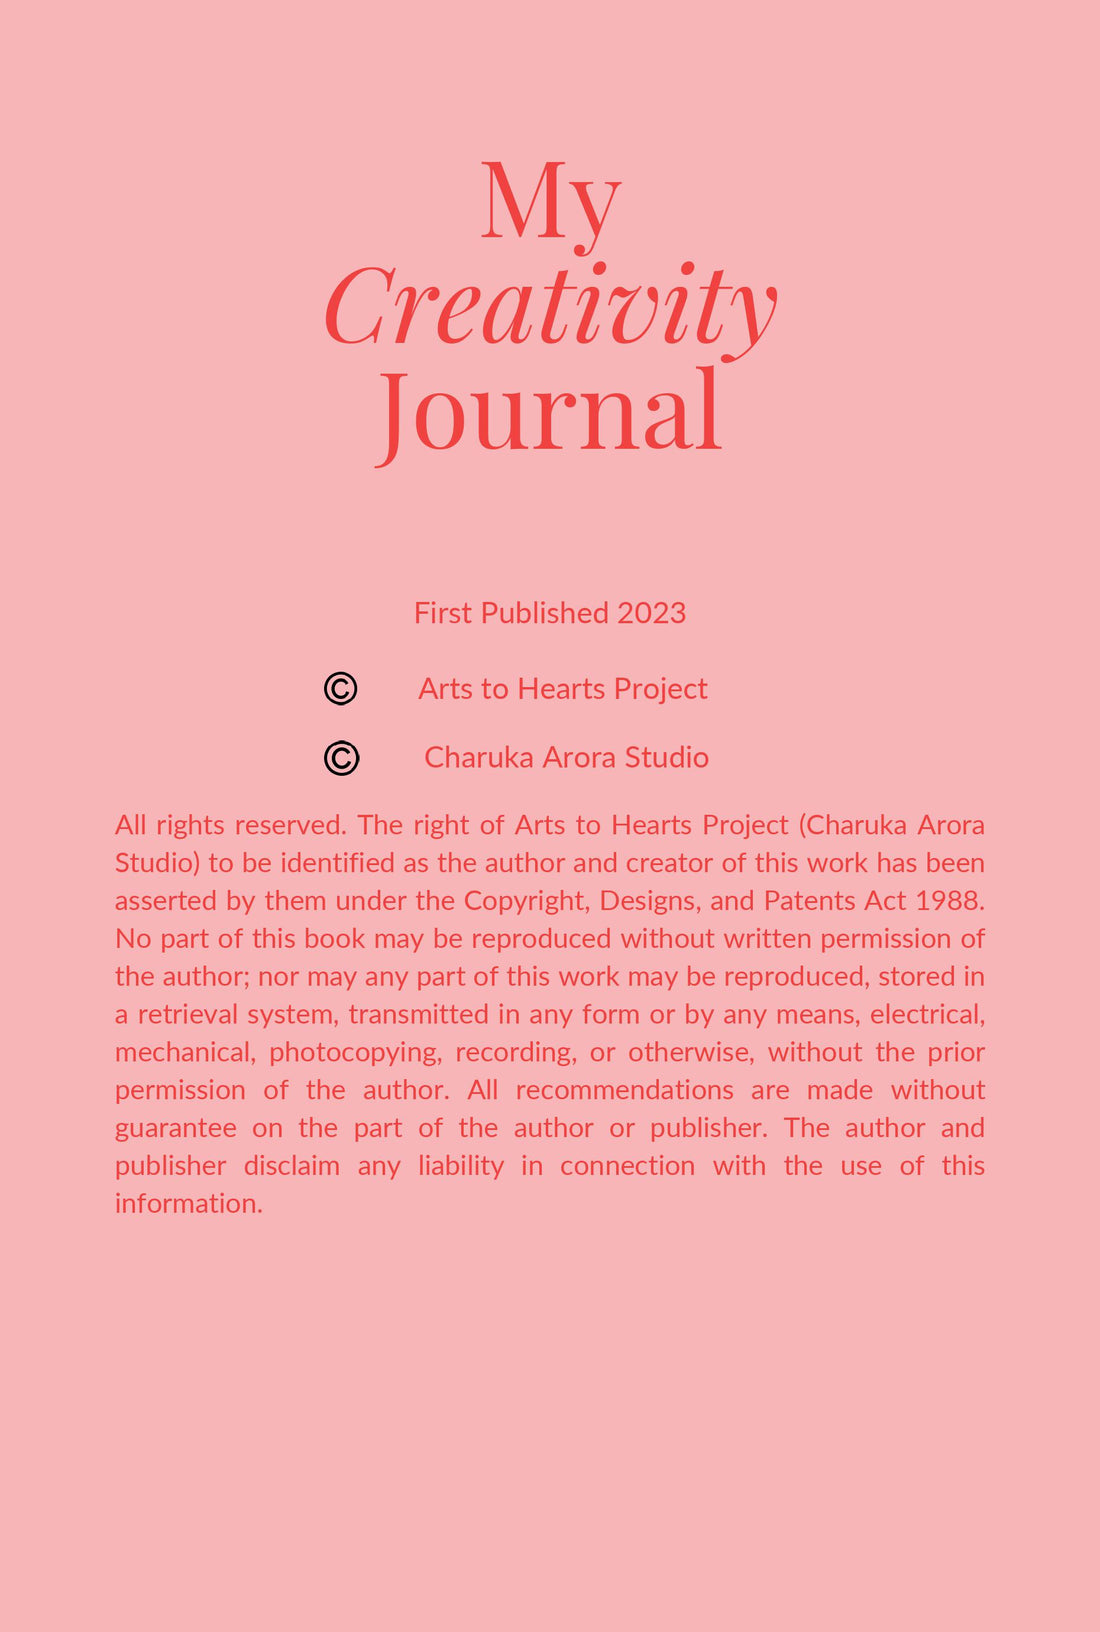 Mon journal de créativité